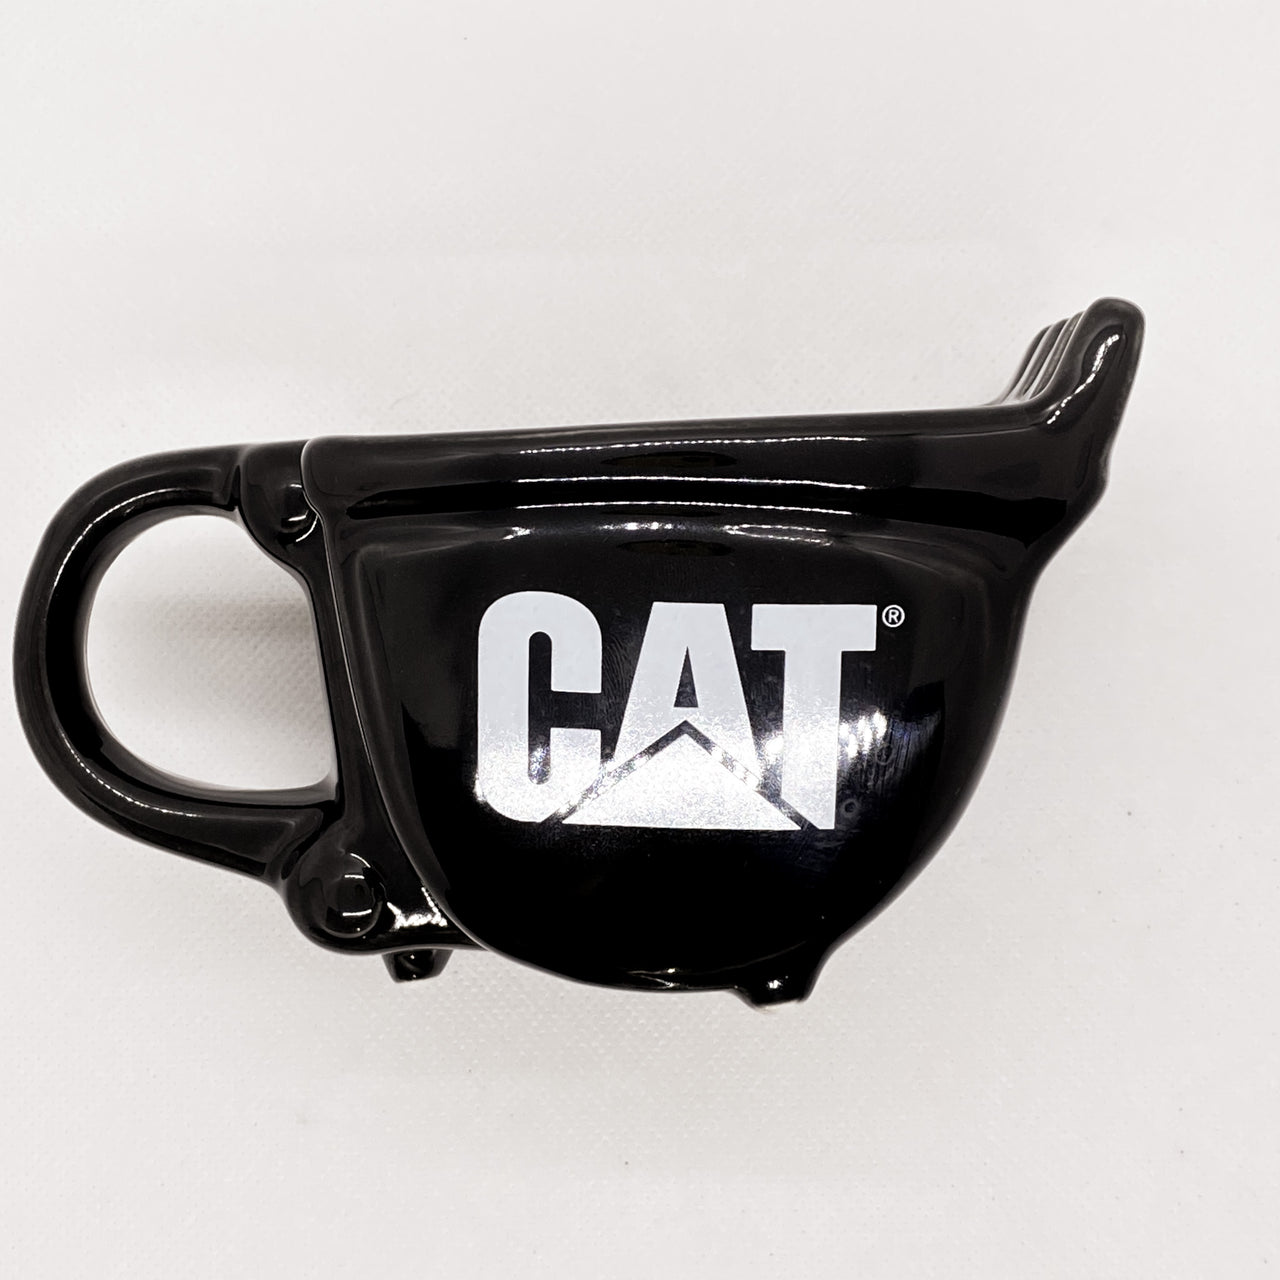 TCA002 Cat Spoon Shaped Mug Black Mug